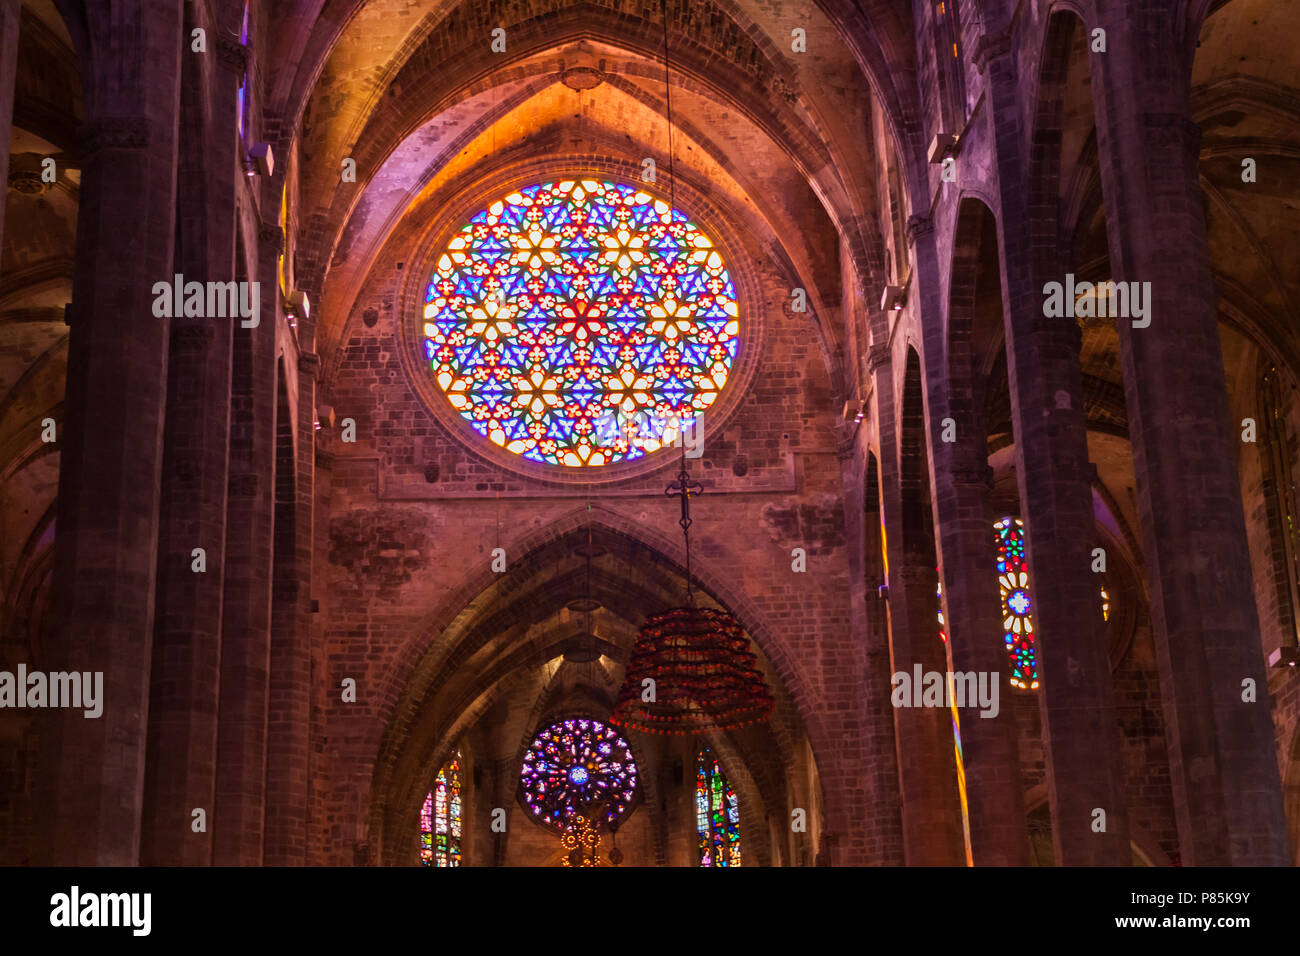 PALMA DI MALLORCA, Spagna - 23 giugno 2018: rosone nella Cattedrale di Santa Maria di Palma, noto anche come La Seu. Palma di Maiorca, SPAGNA Foto Stock